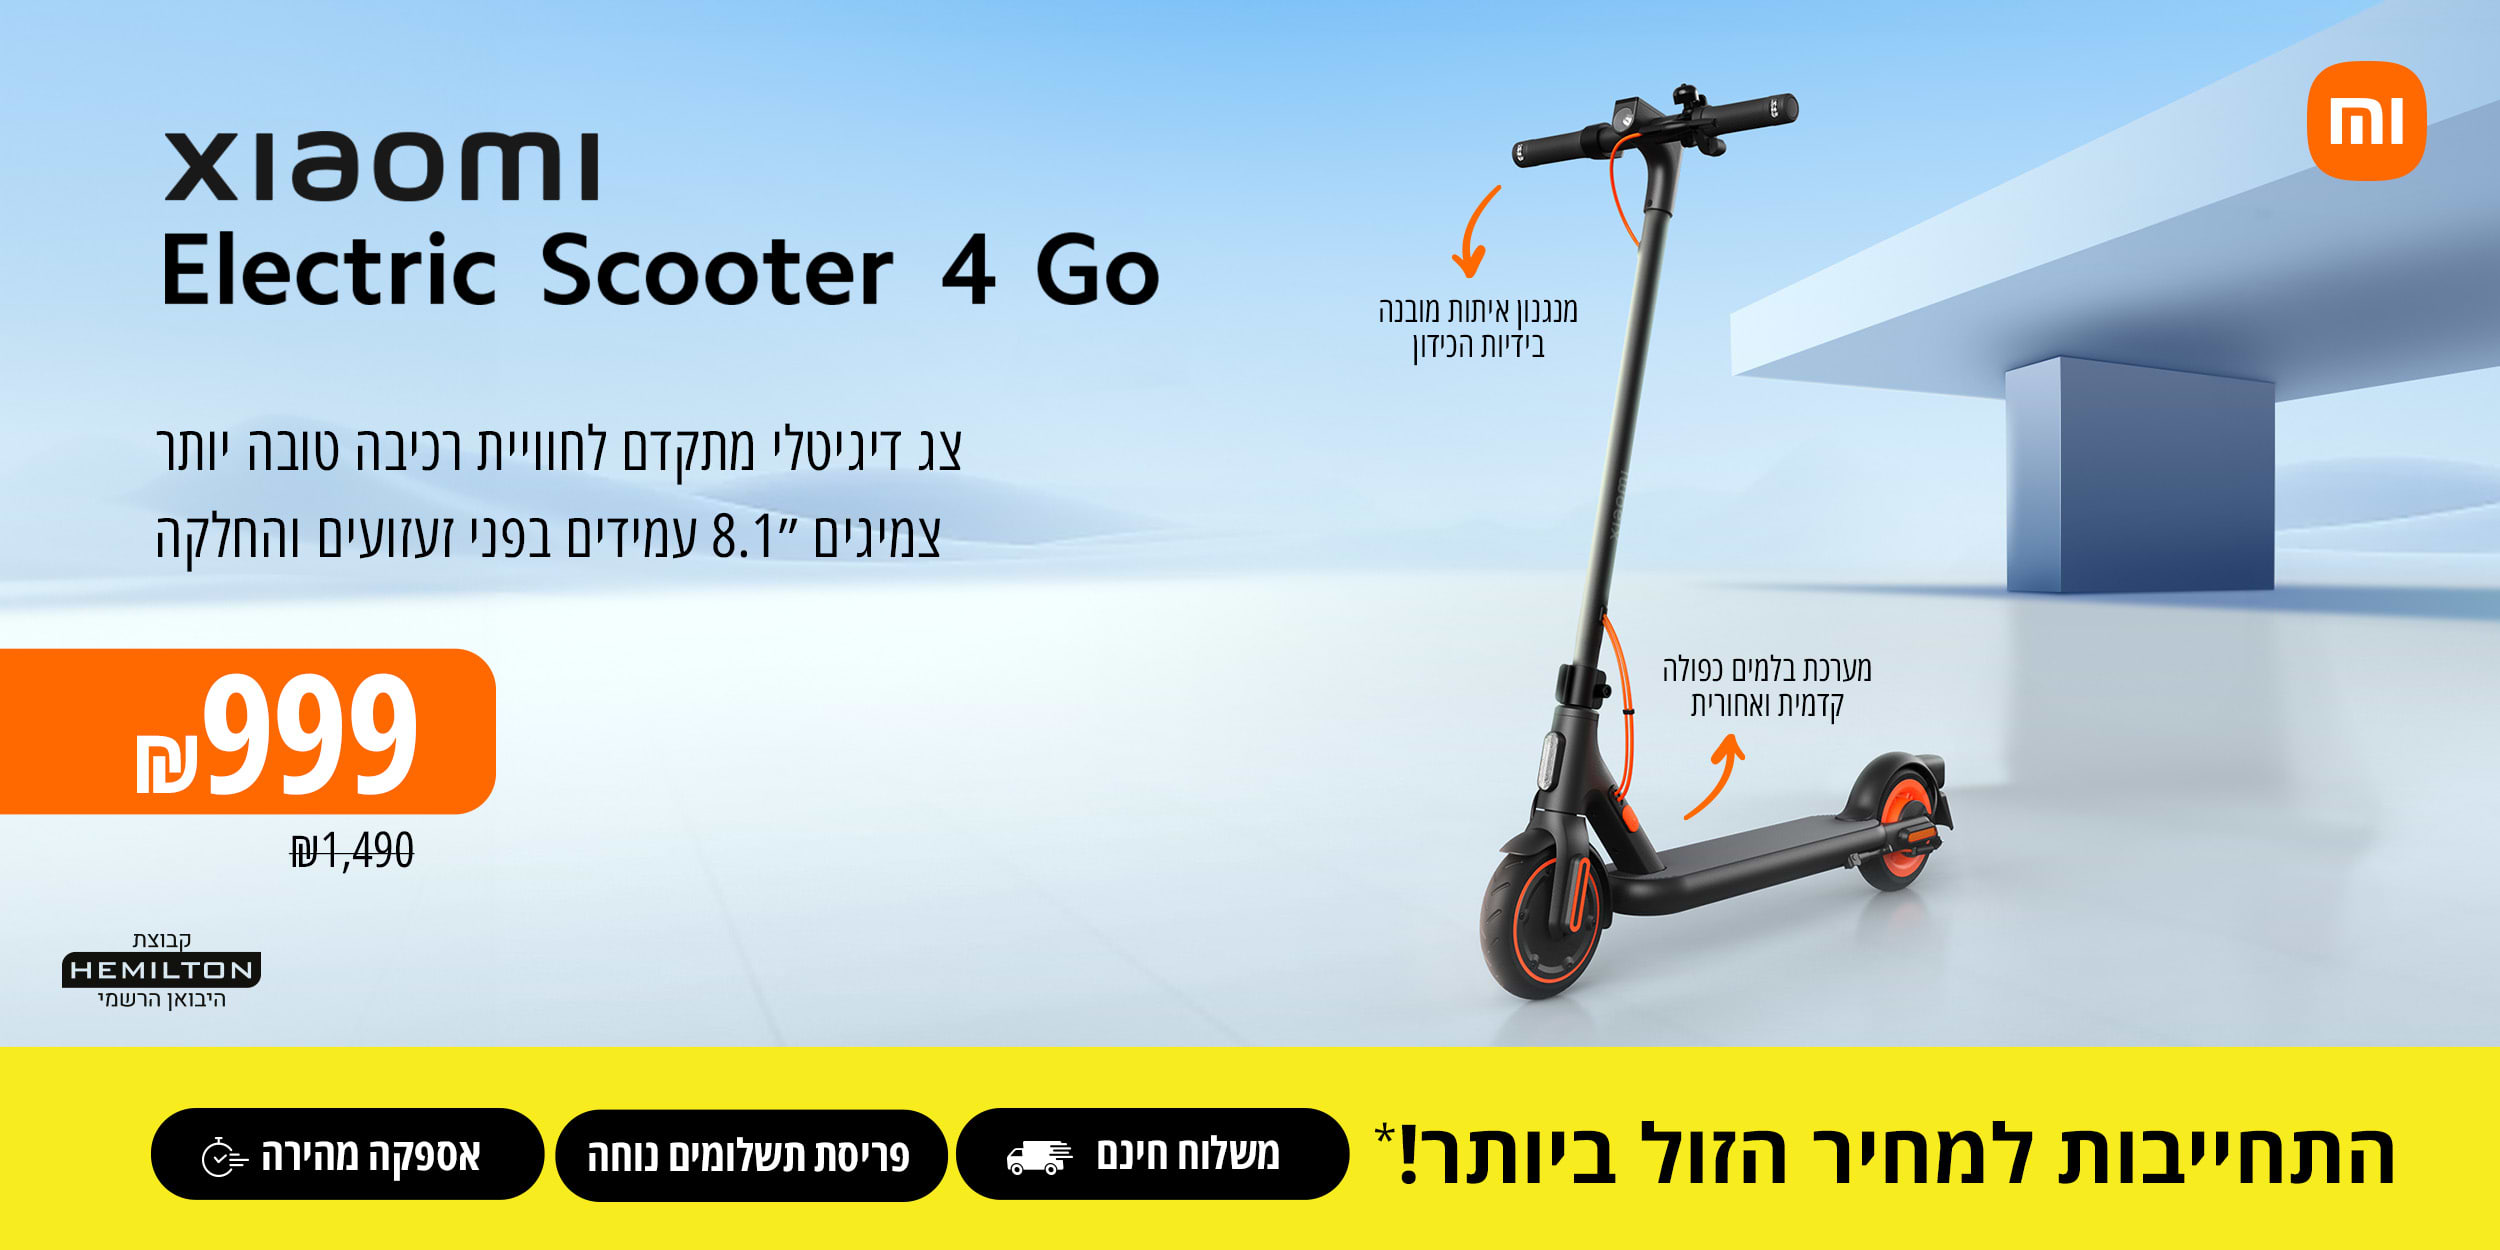 xiaomi electric scooter 4 go צג דיגיטלי מתקדם לחווית רכיבה טובה יותר צמיגים 8.1